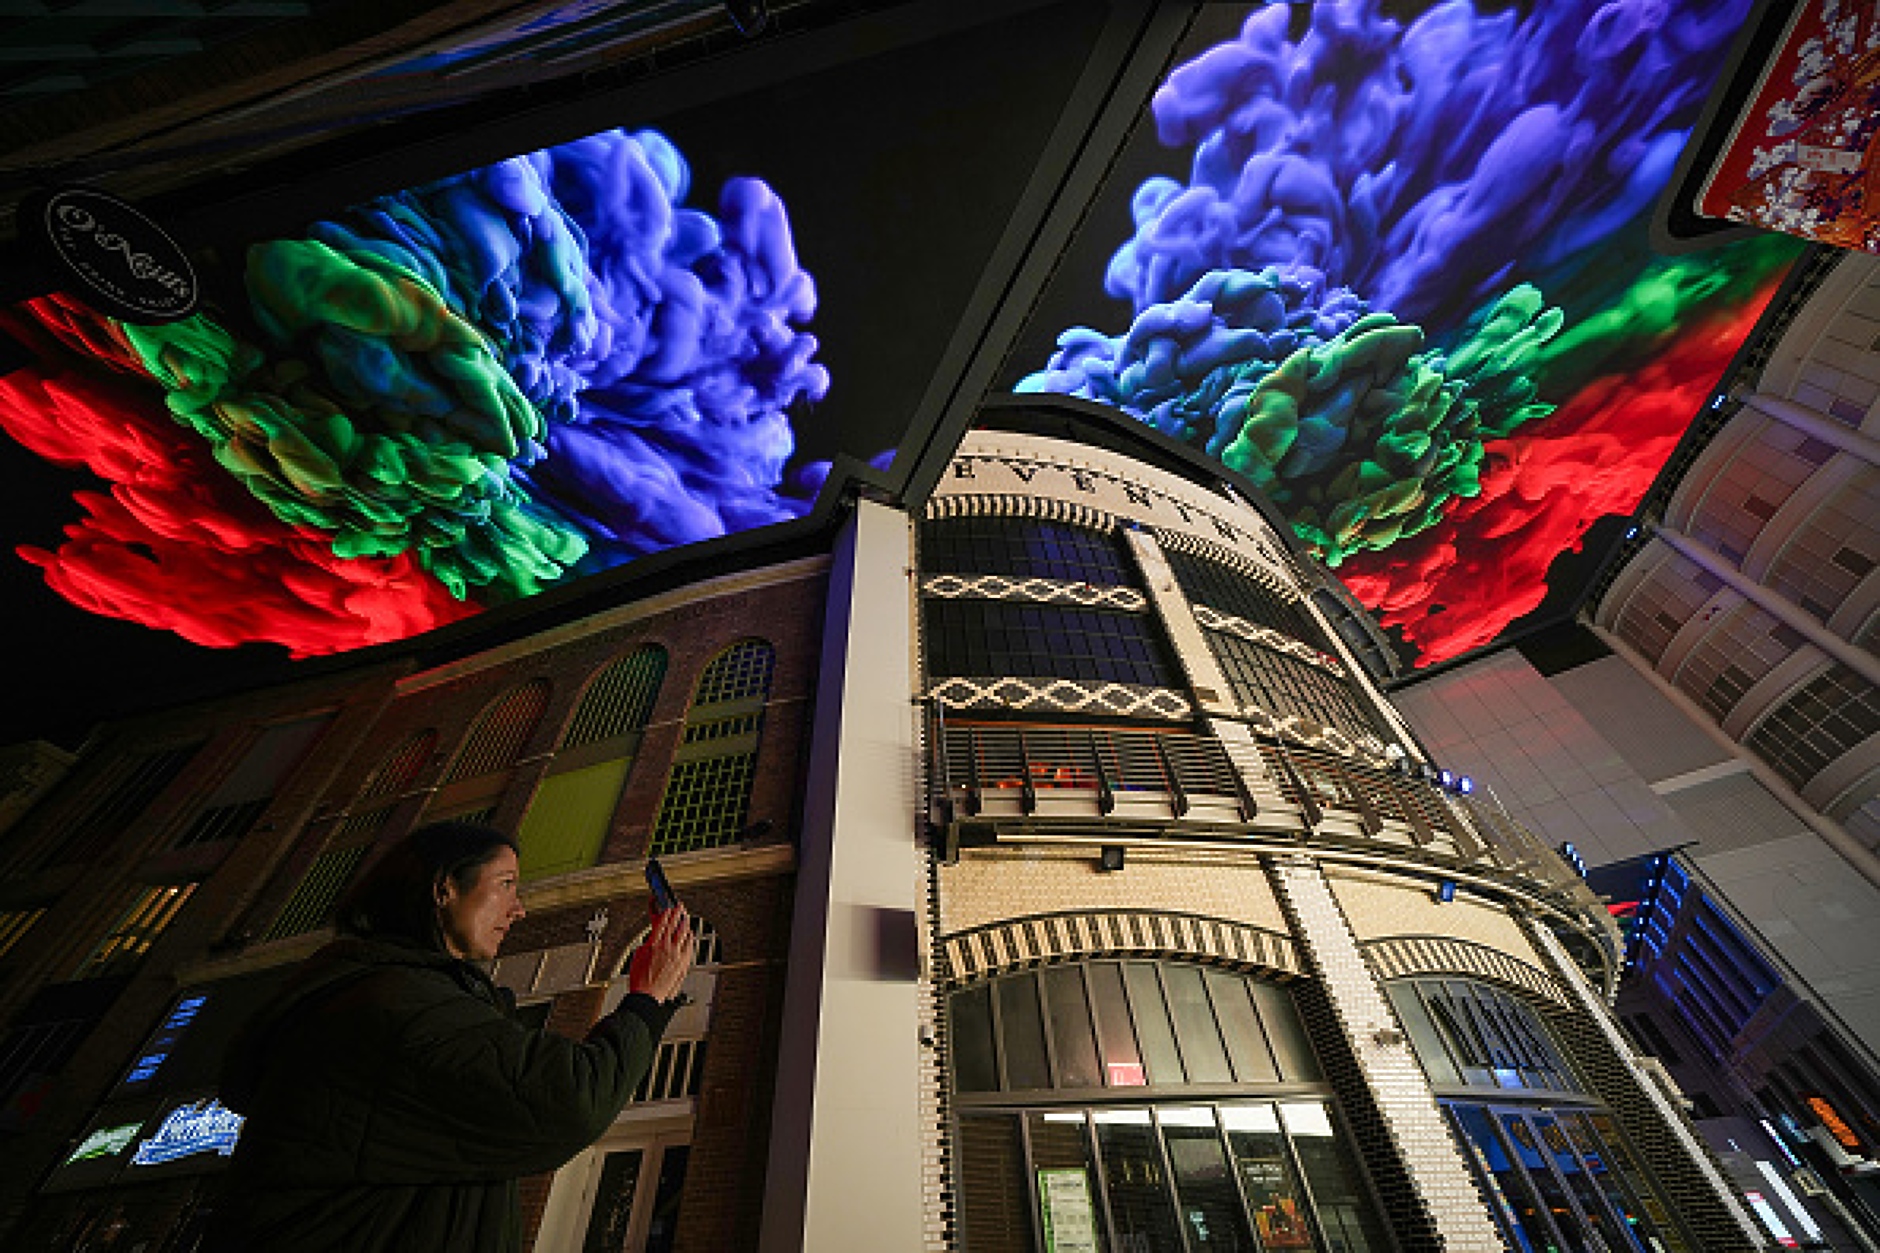 Анимации "избухнаха" в пищни цветове и образи на 20 март в върху огромен цифров екран с размерите на 5 тенис корта, монтиран на покрива на наскоро ремонтираната сграда Printworks в Манчестър, Англия.  Снимка: /Getty Images